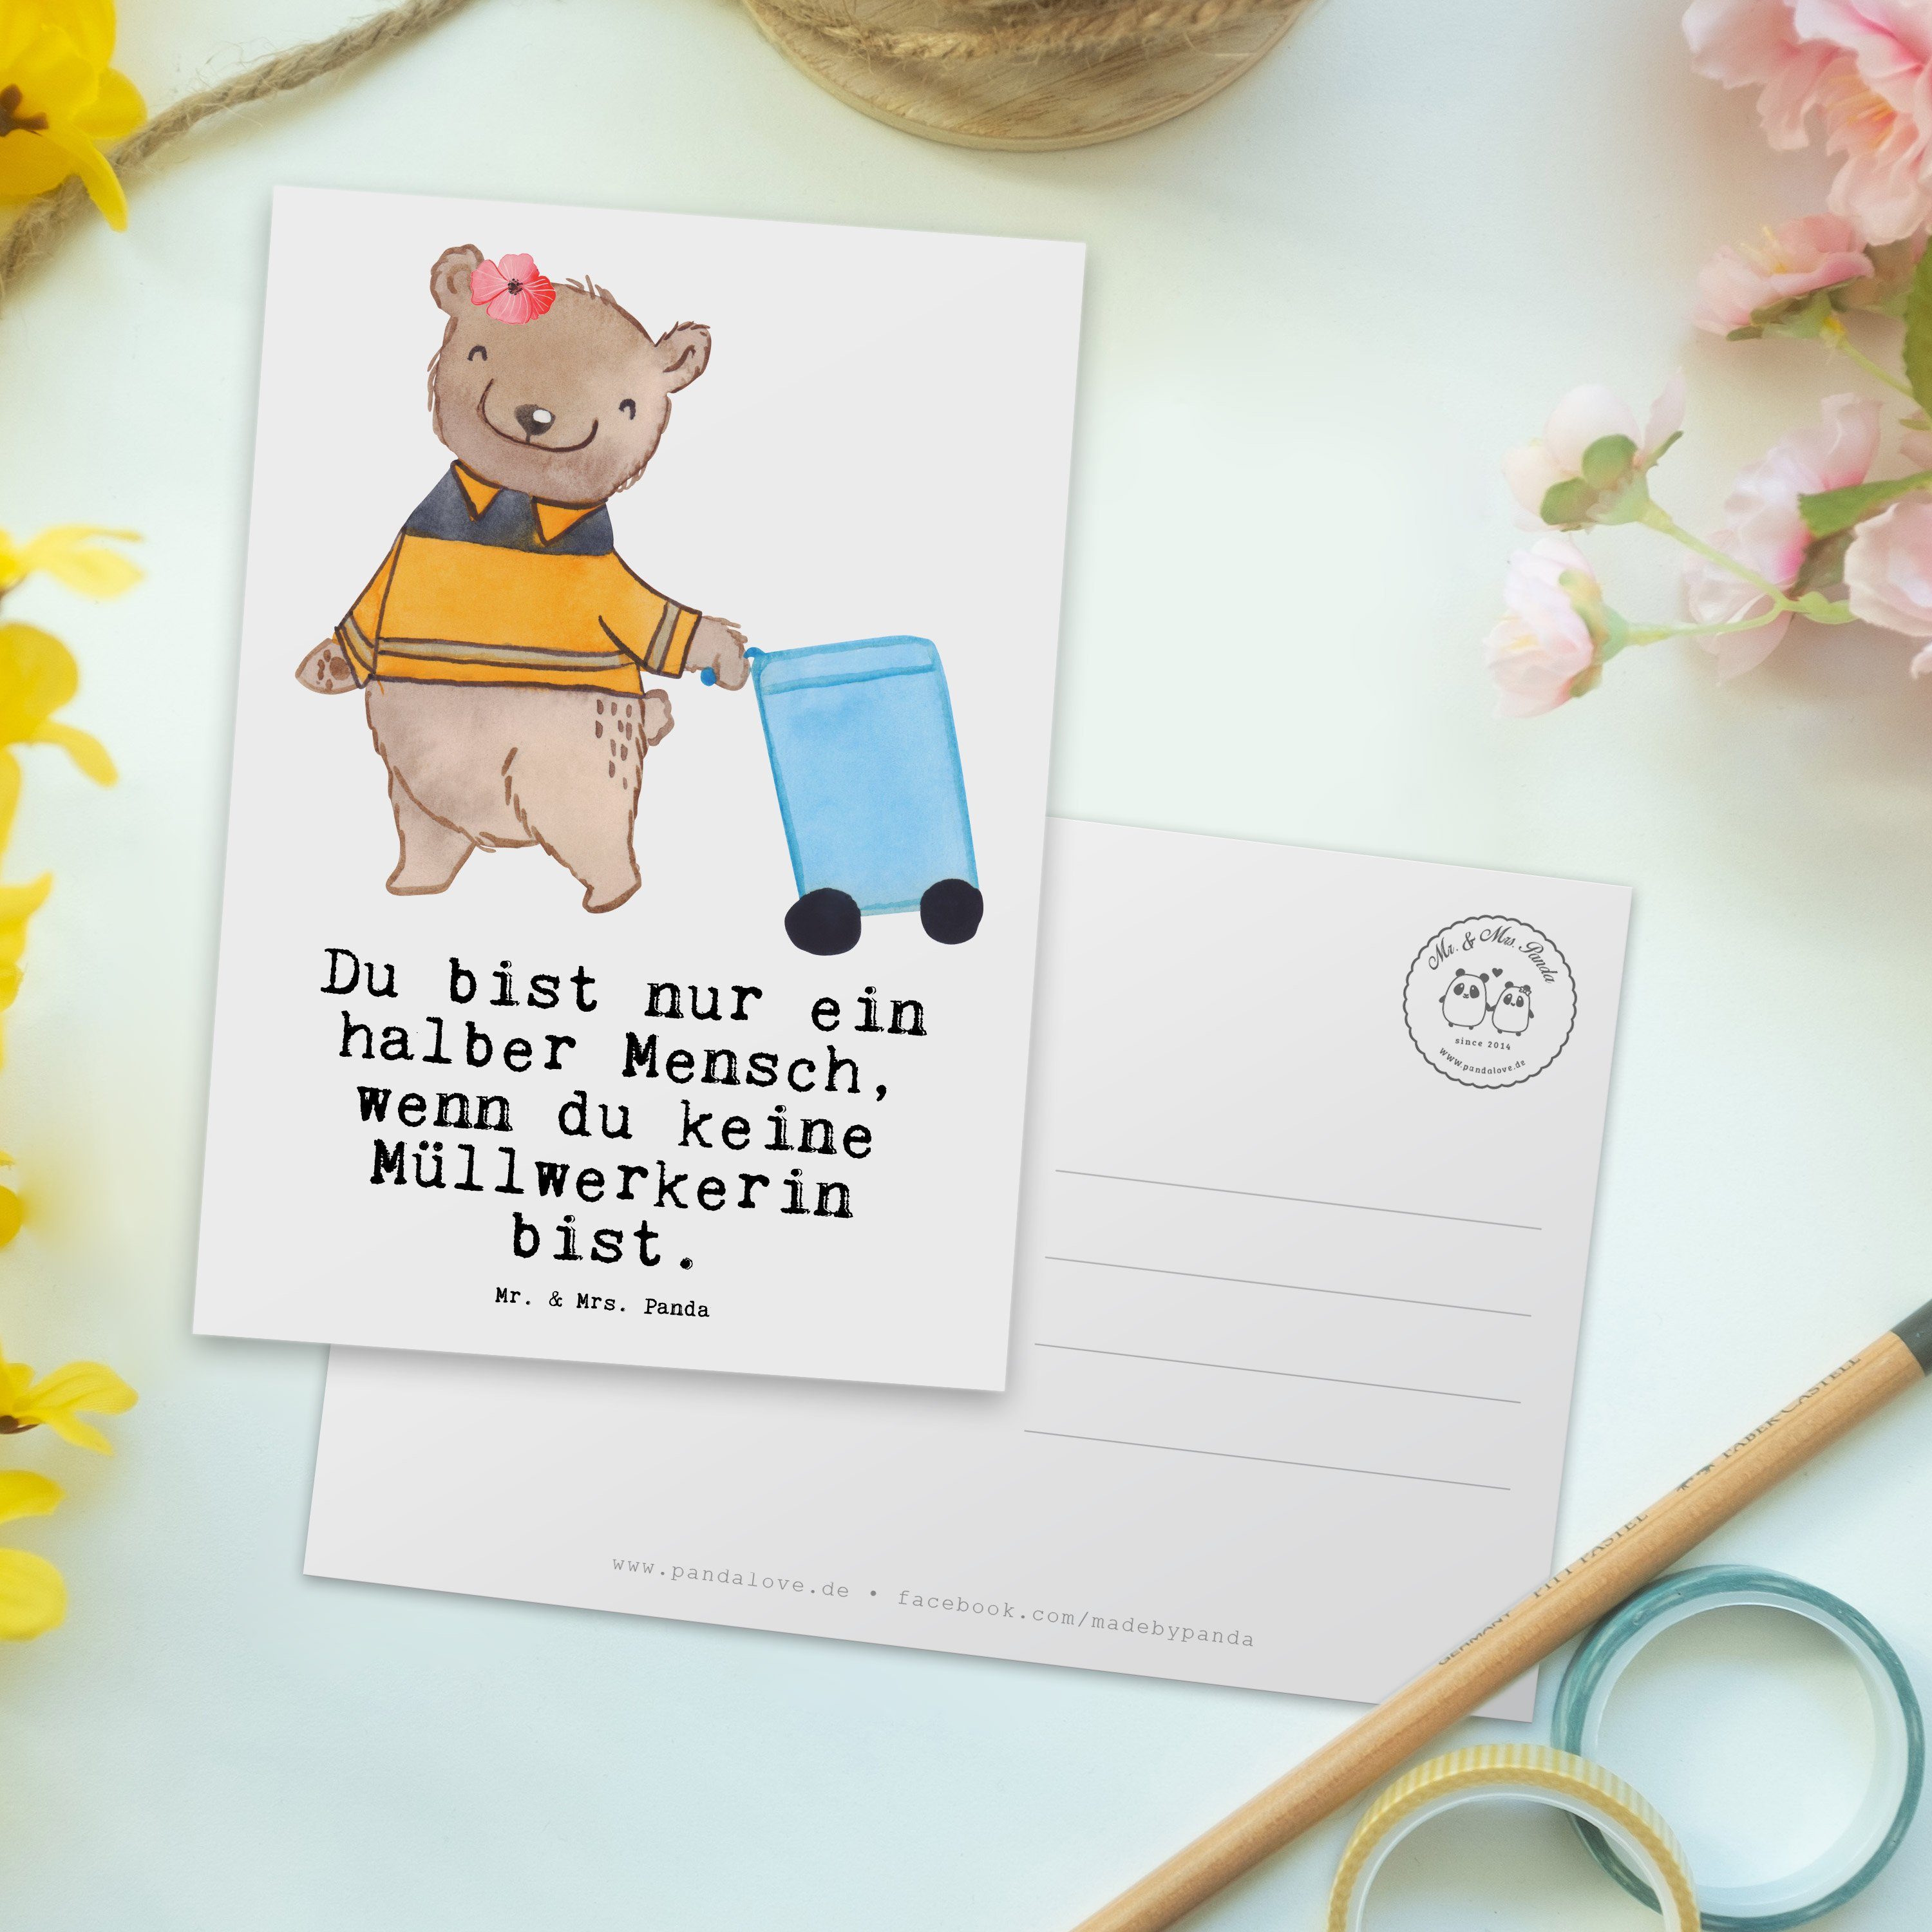 Mr. & Mrs. Panda Postkarte Müllwerkerin mit Herz - Weiß - Geschenk, Kollege, Danke, sauber mache